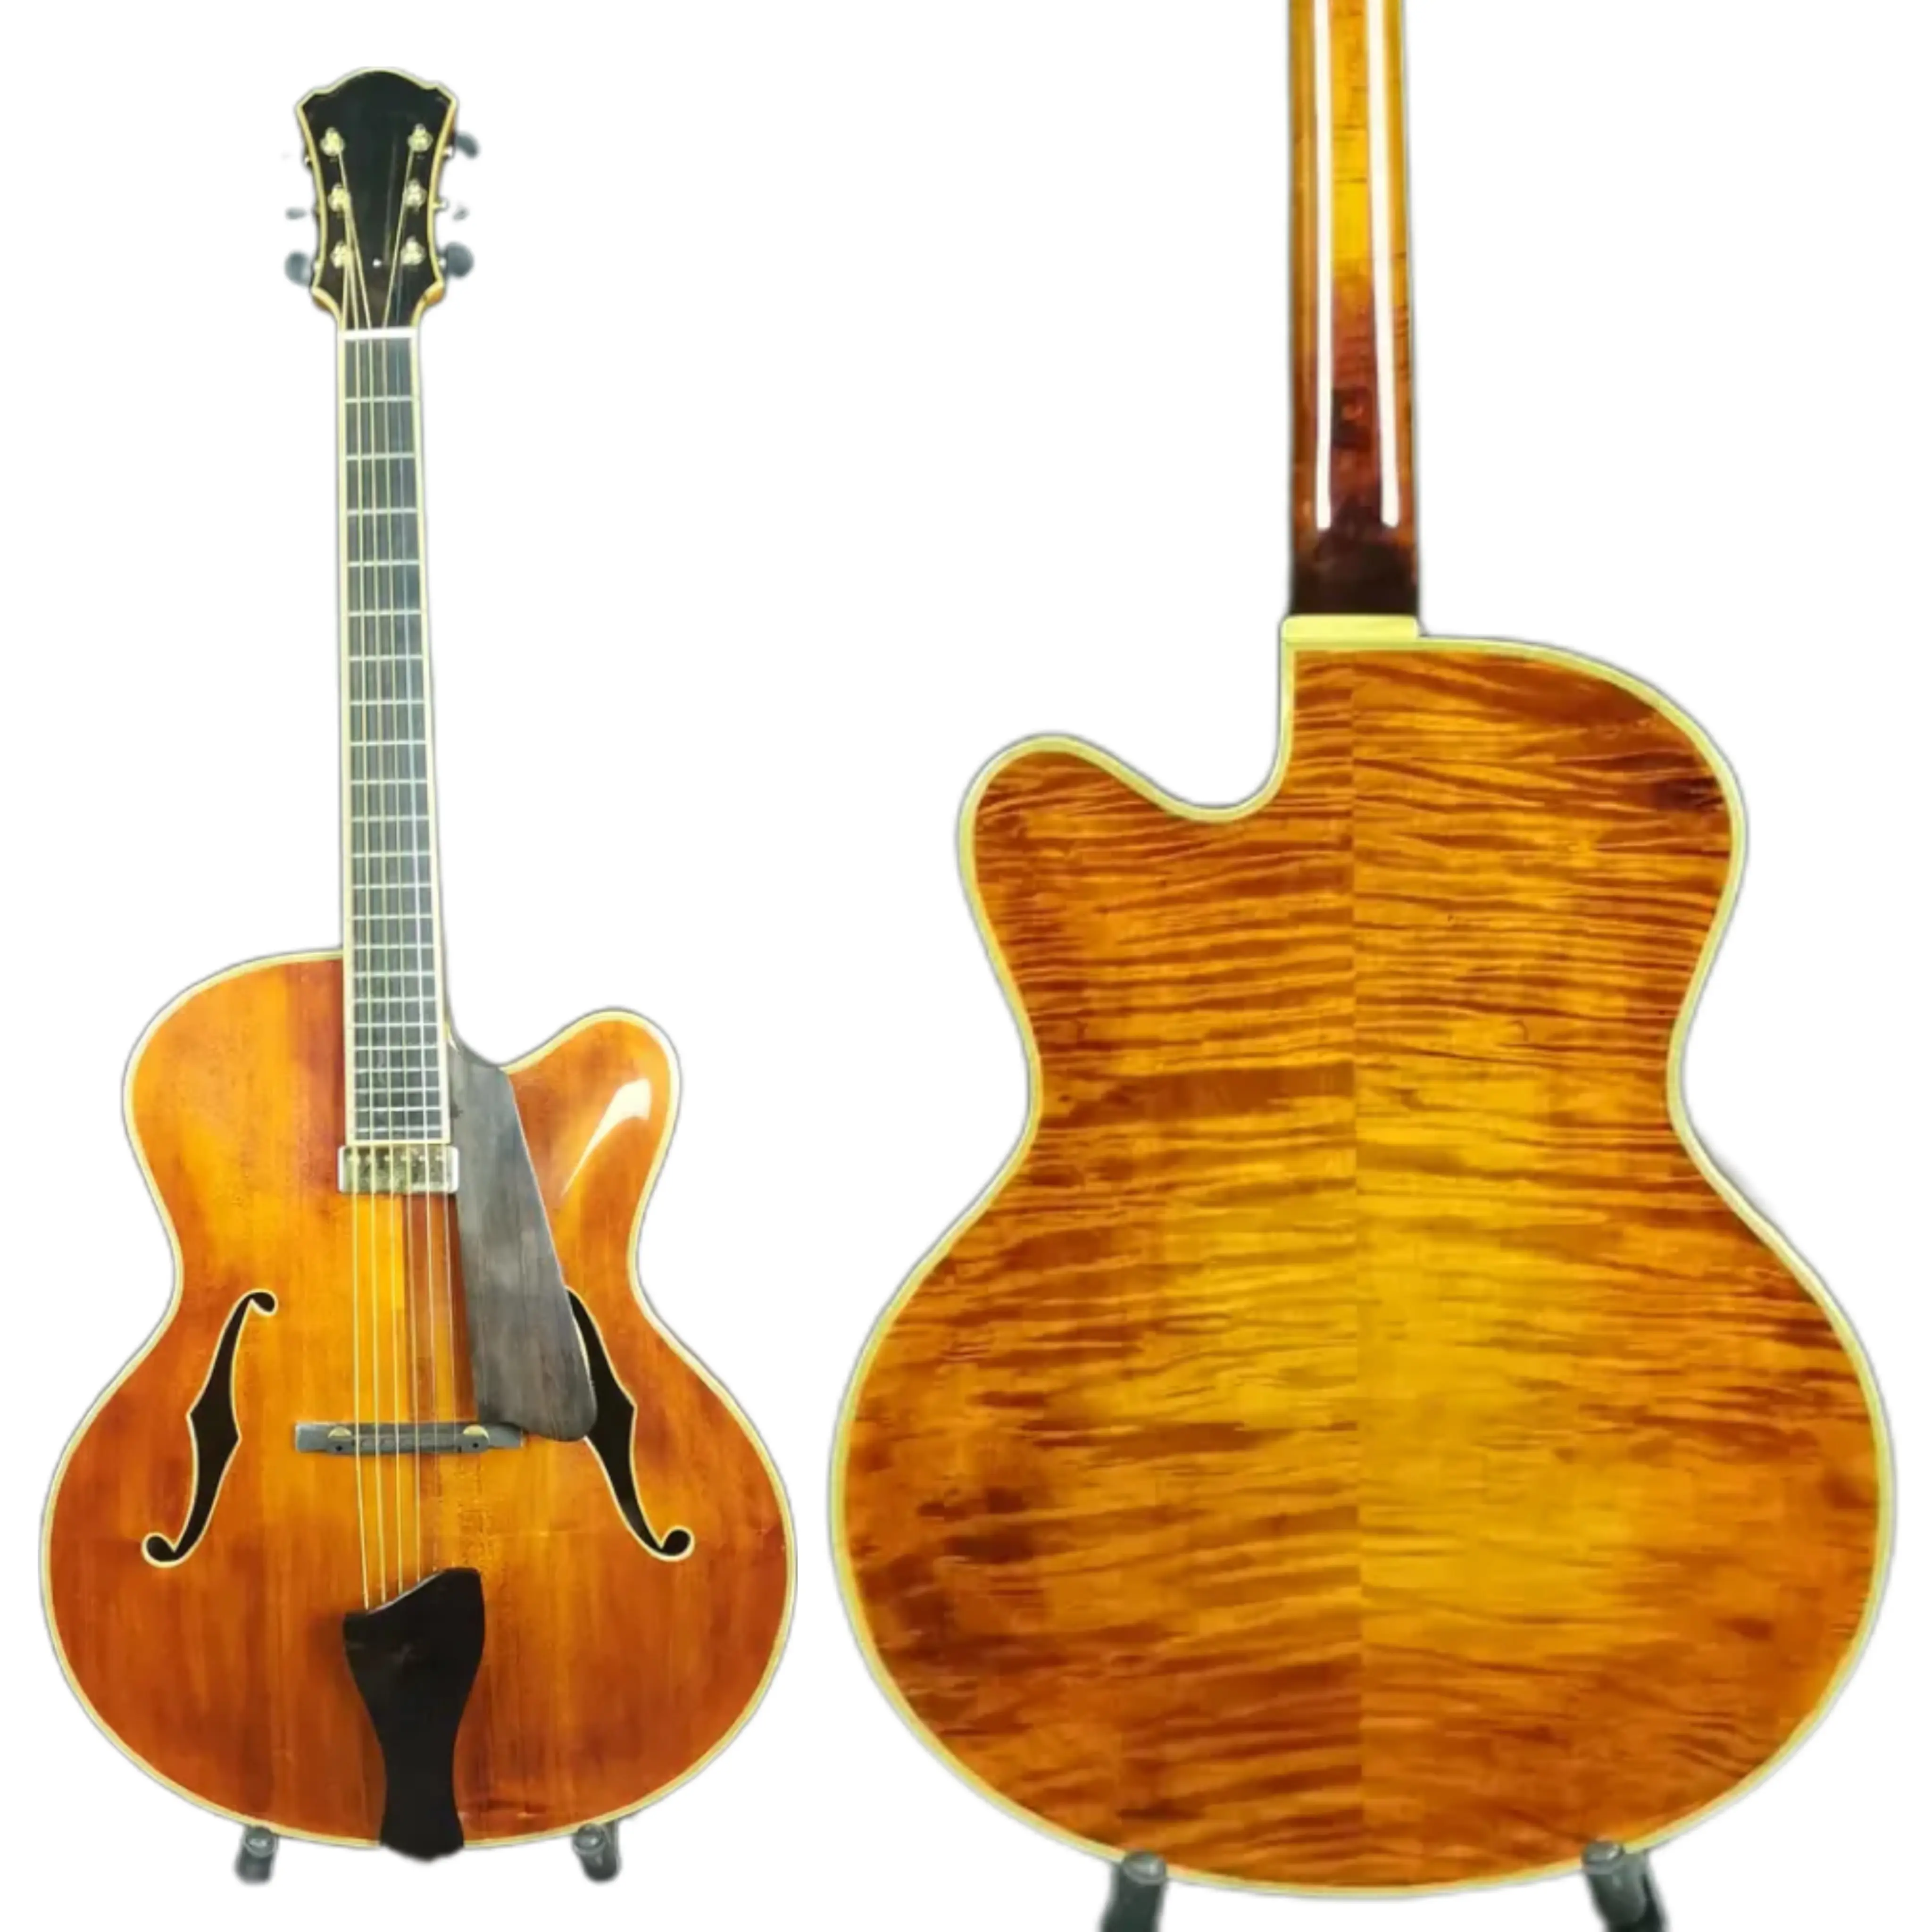 16 "barato de alta calidad hecho a mano Archtop cuerpo hueco personalizado tallado guitarra de arce sólido guitarra de jazz antigua